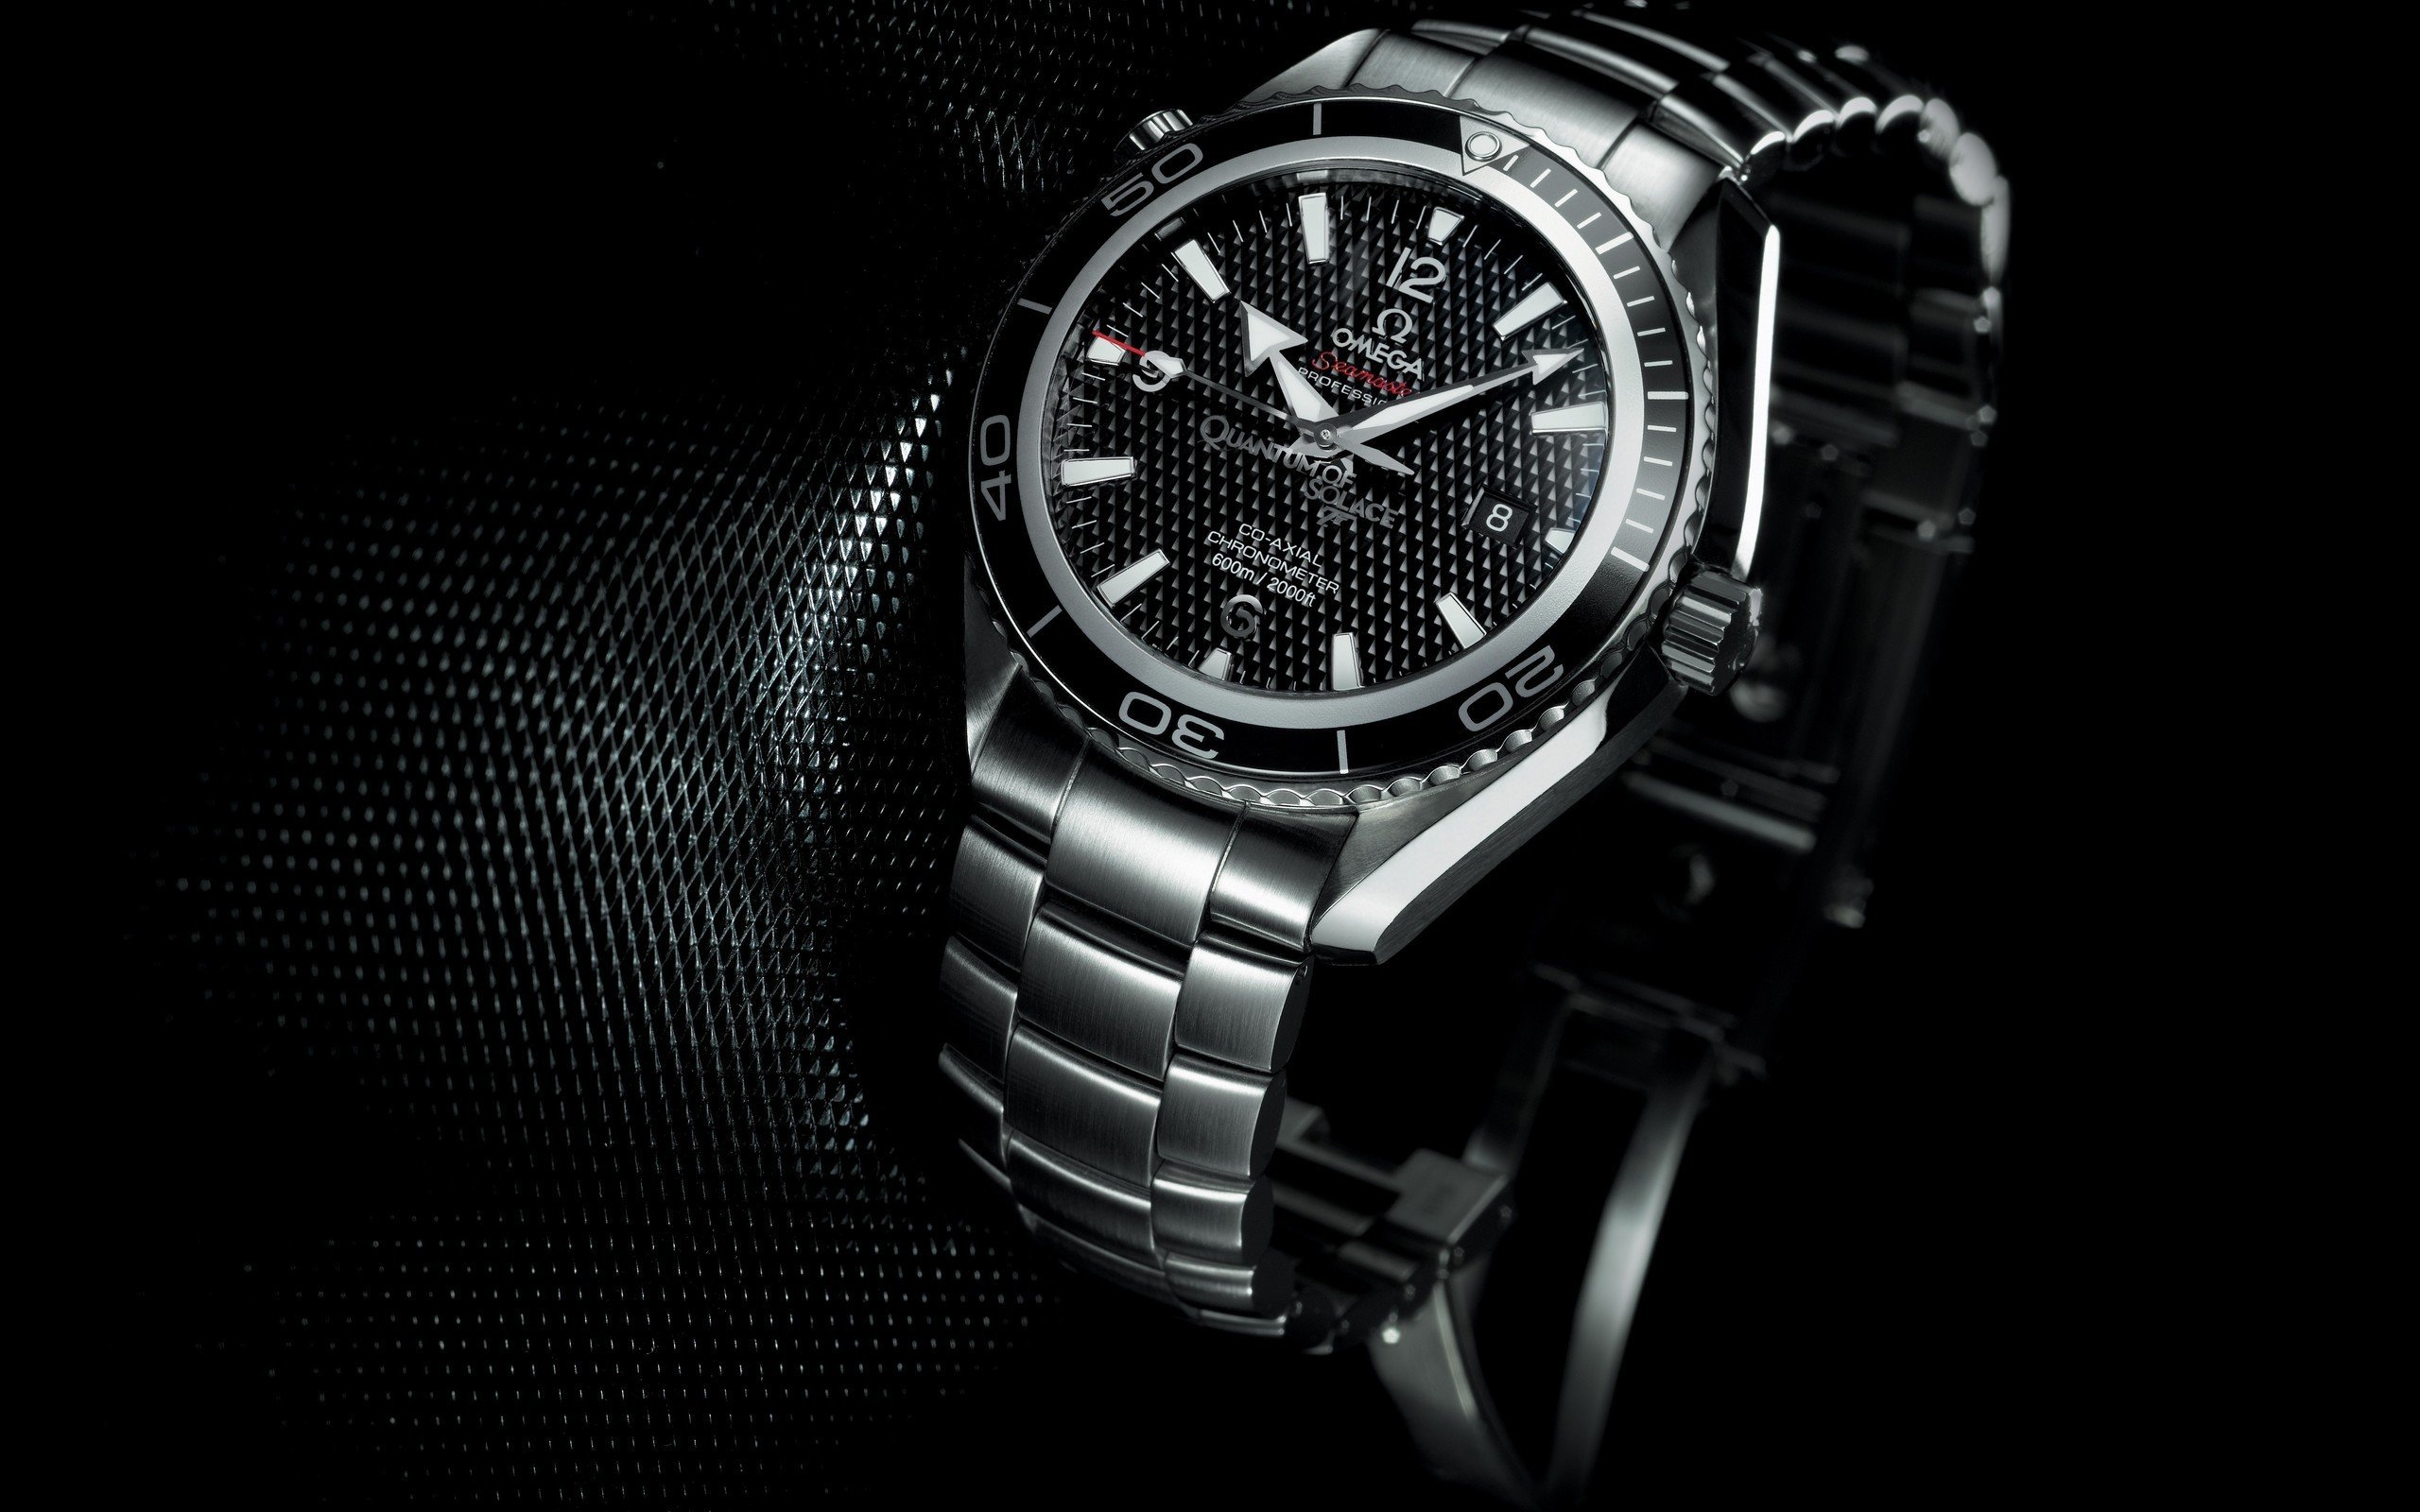 Wallpaper 2560x1600 px luxury watches watch 2560x1600